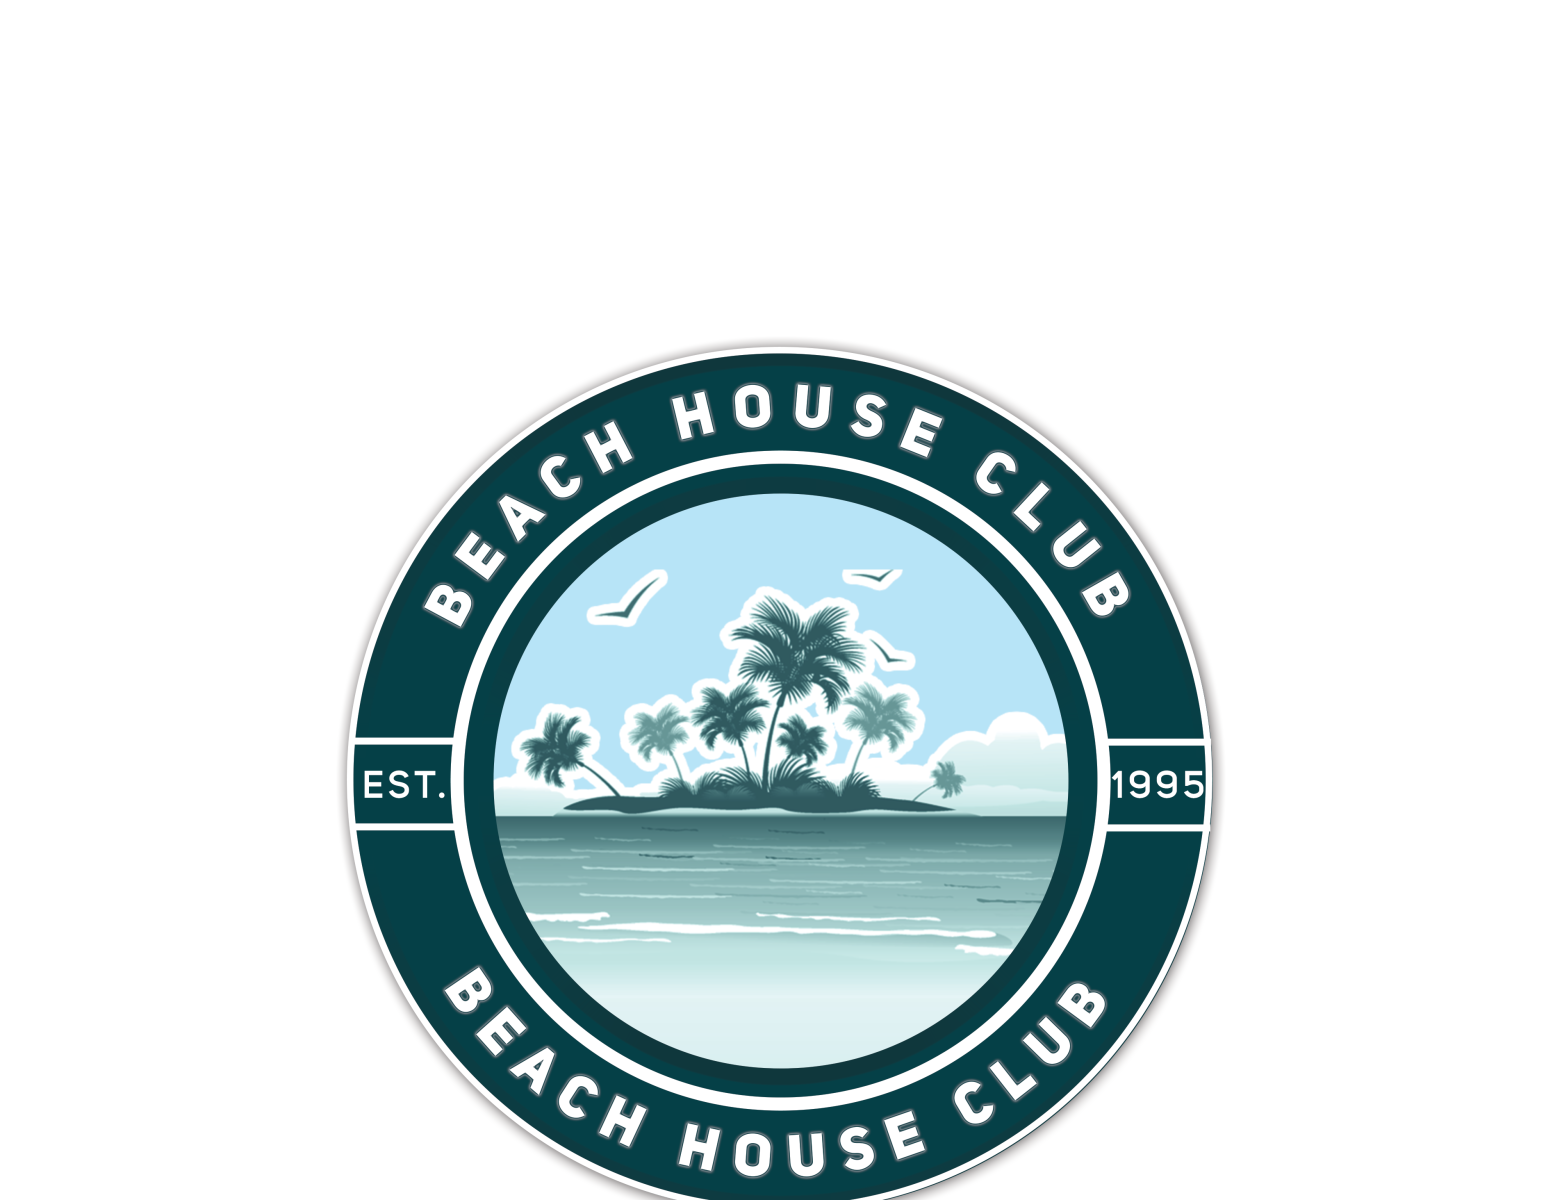 beach house club by Chigozie Azubuike Tony on Dribbble